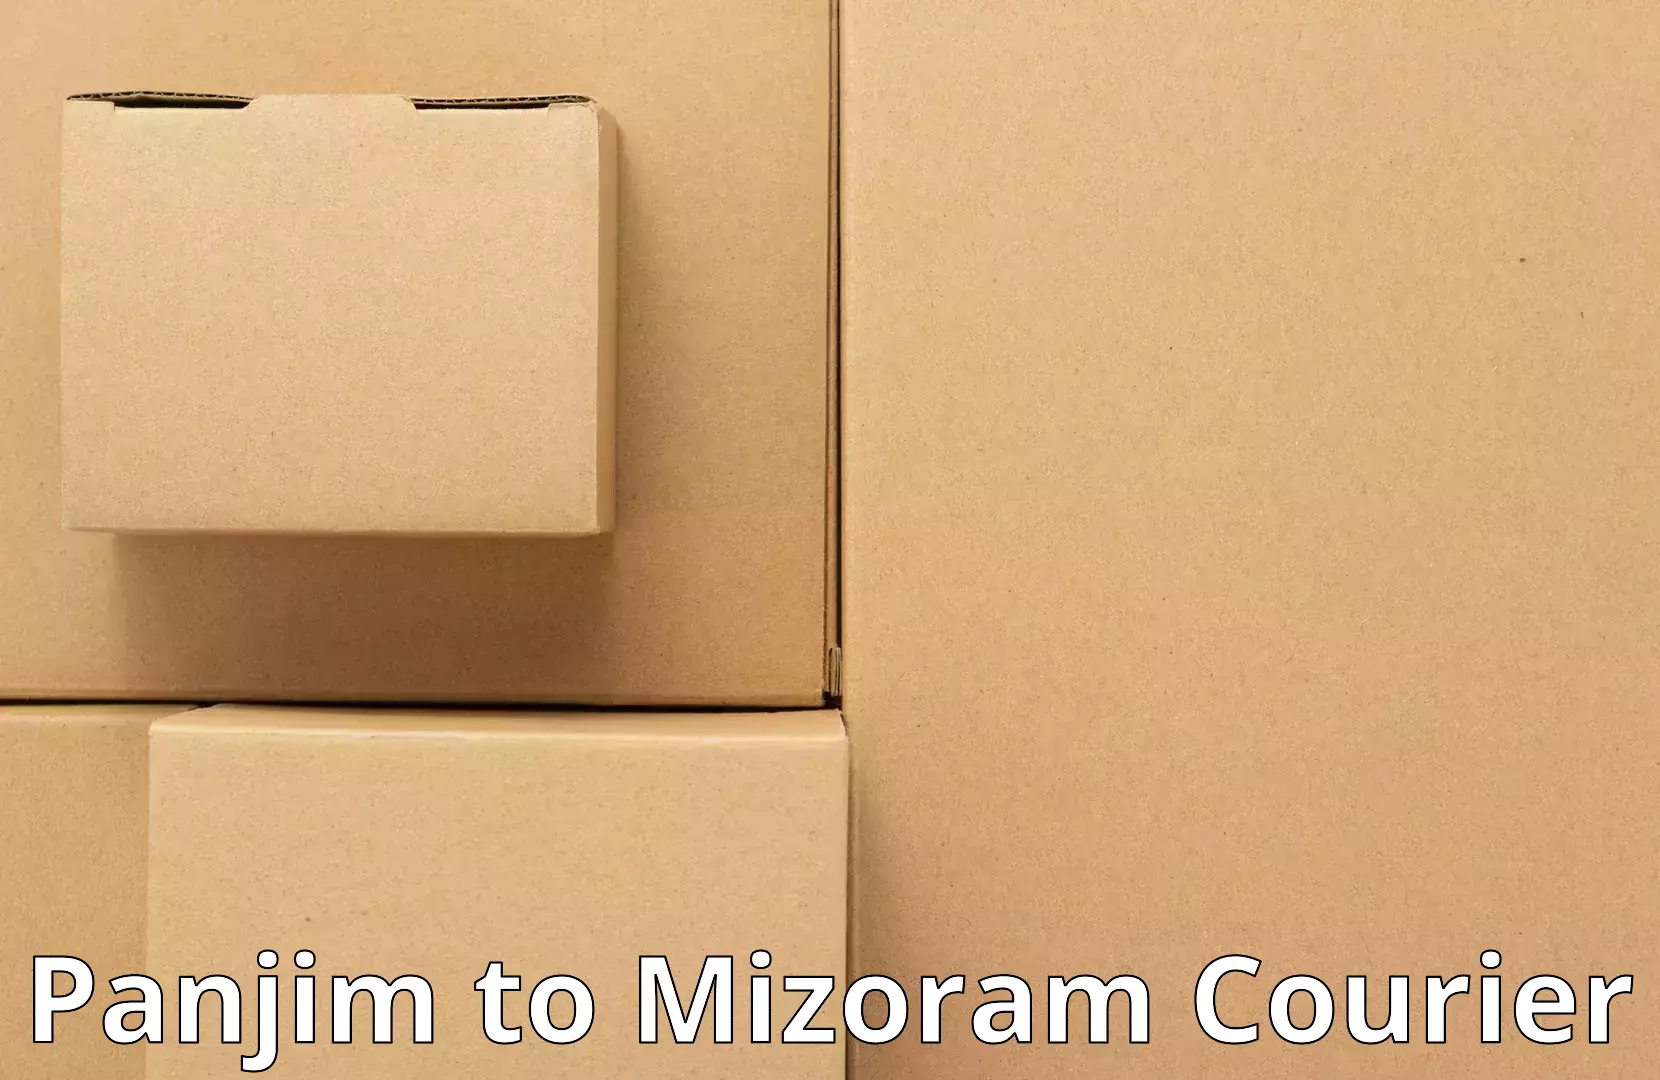 Budget-friendly moving services Panjim to Mizoram